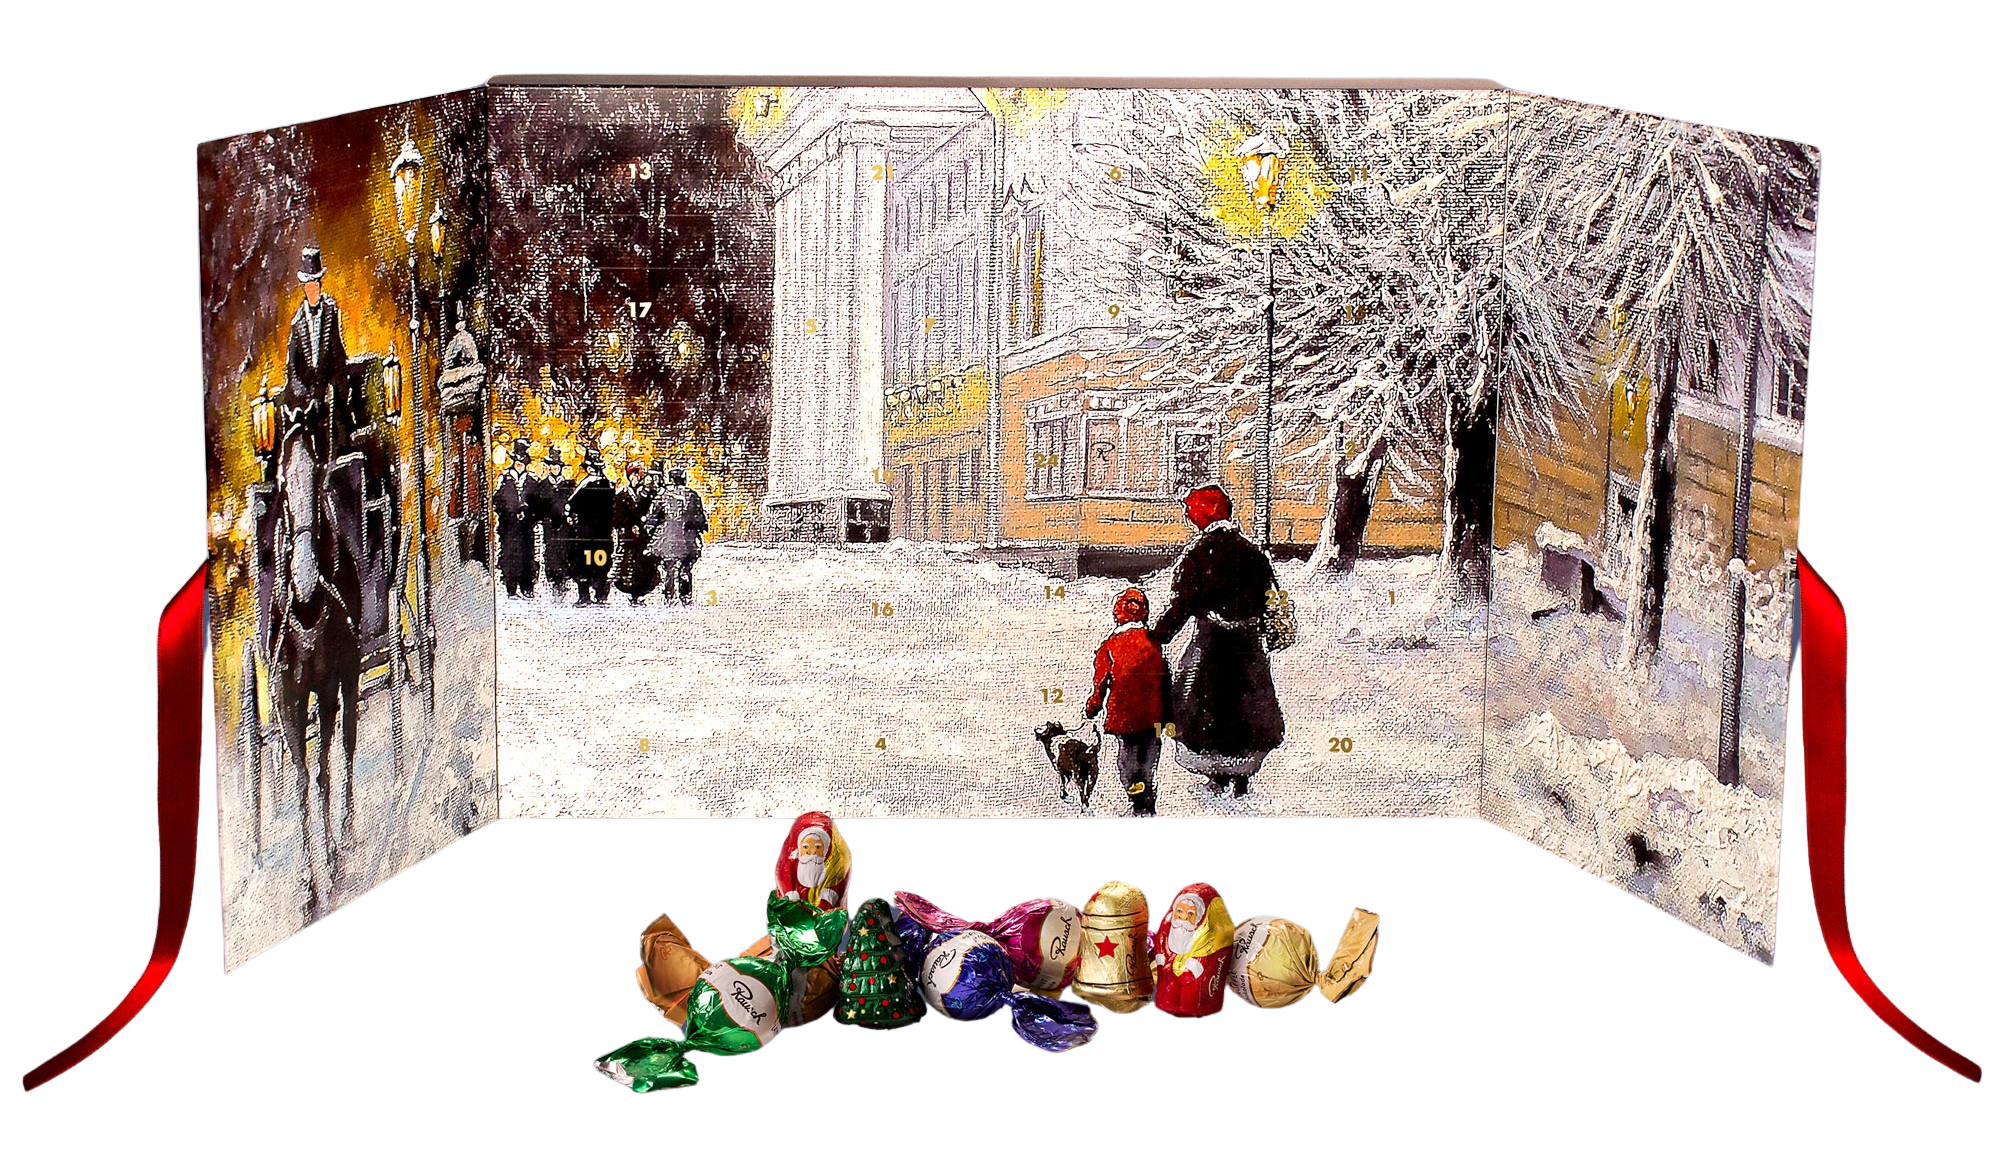 Adventskalender ›Rausch Weihnachtswelt‹ mit 24 Köstlichkeiten aus Edelkakao-Schokolade und alkoholfreien Pralinen-Kreationen | Rausch Schokoladenhaus